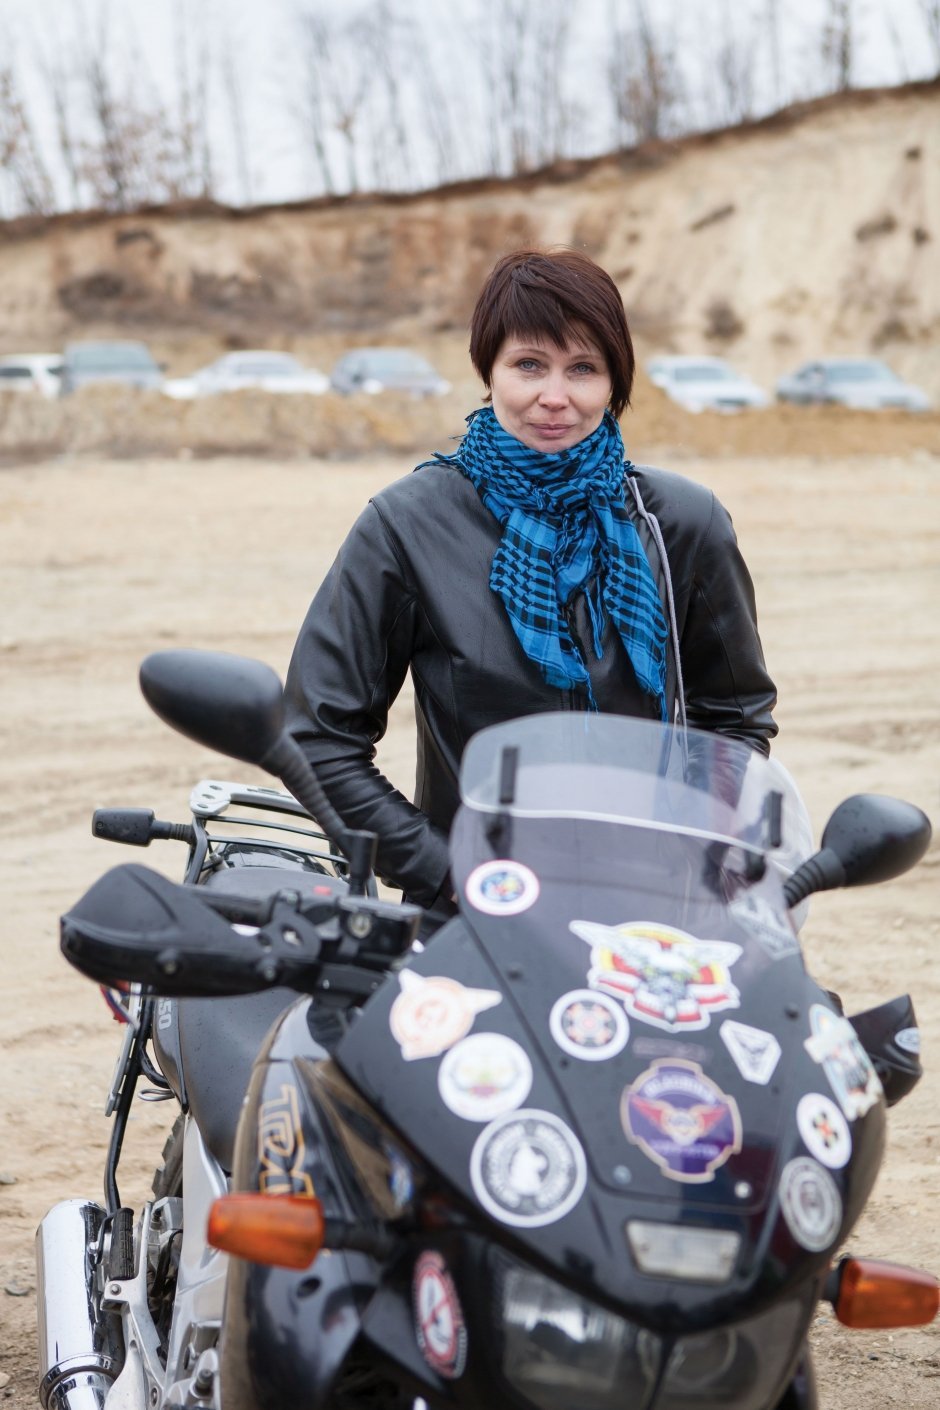 Светлана Кошкова, 43 года, преподаватель Медколледжа  Особо ничего к сезону не готовили, просто помыли-почистили мотоциклы и сейчас крутим карту – думаем, куда поехать.